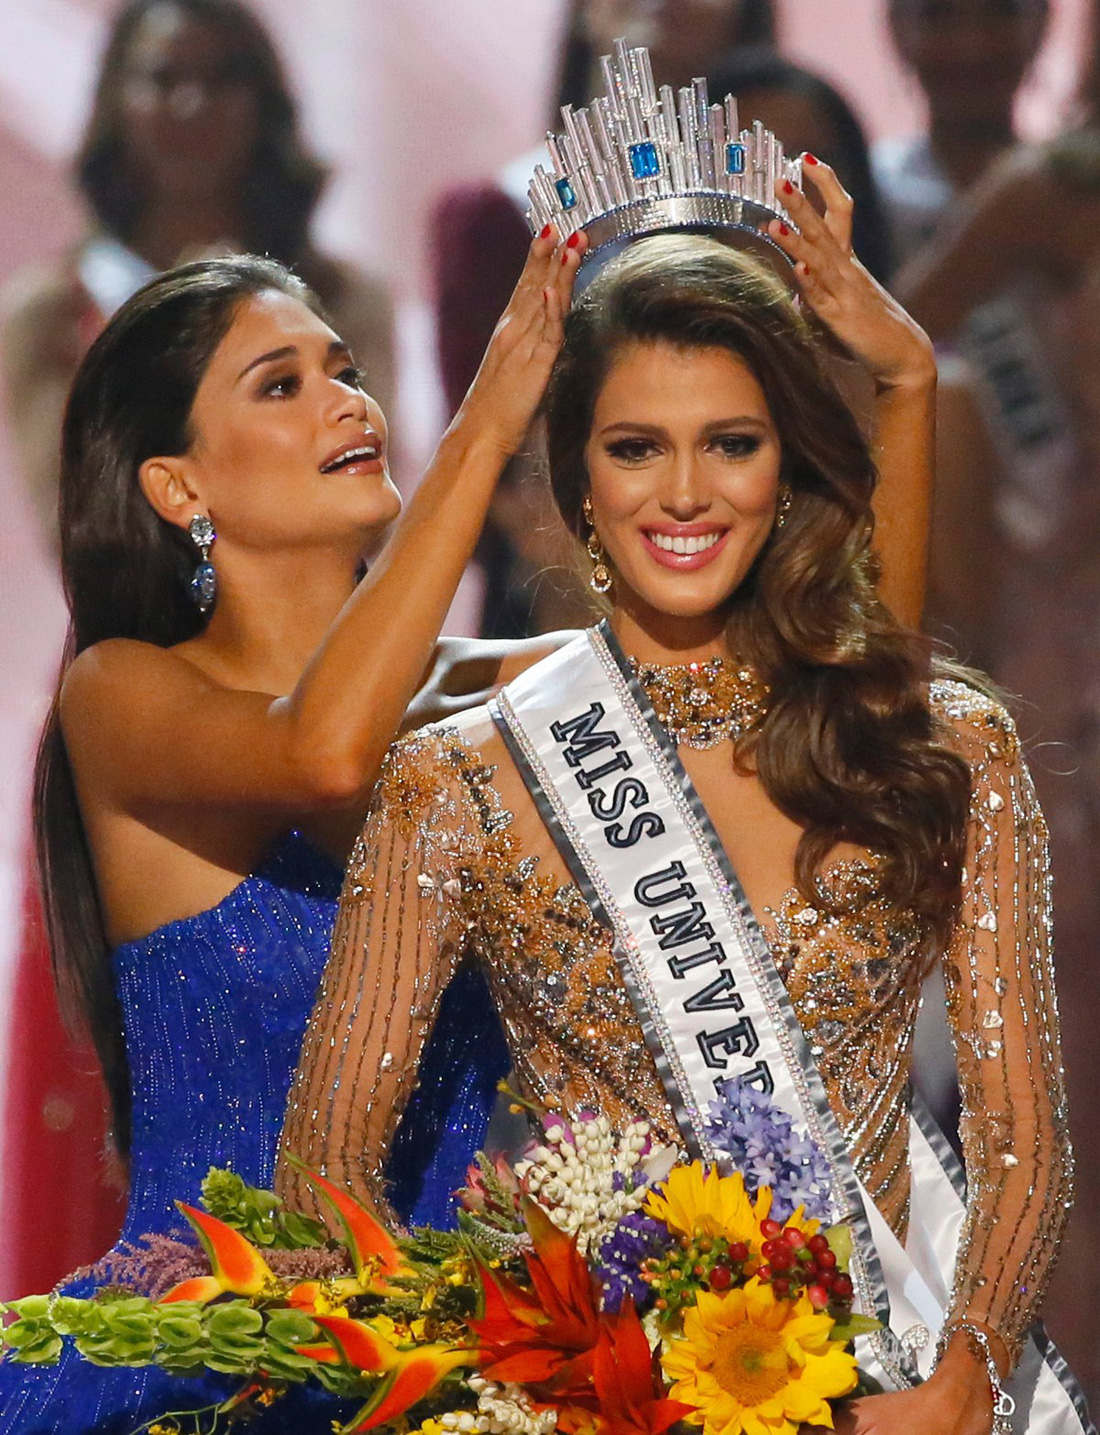 Thí sinh Miss Universe khóc, la thét, há hốc mồm khi là Hoa hậu - Ảnh 3.